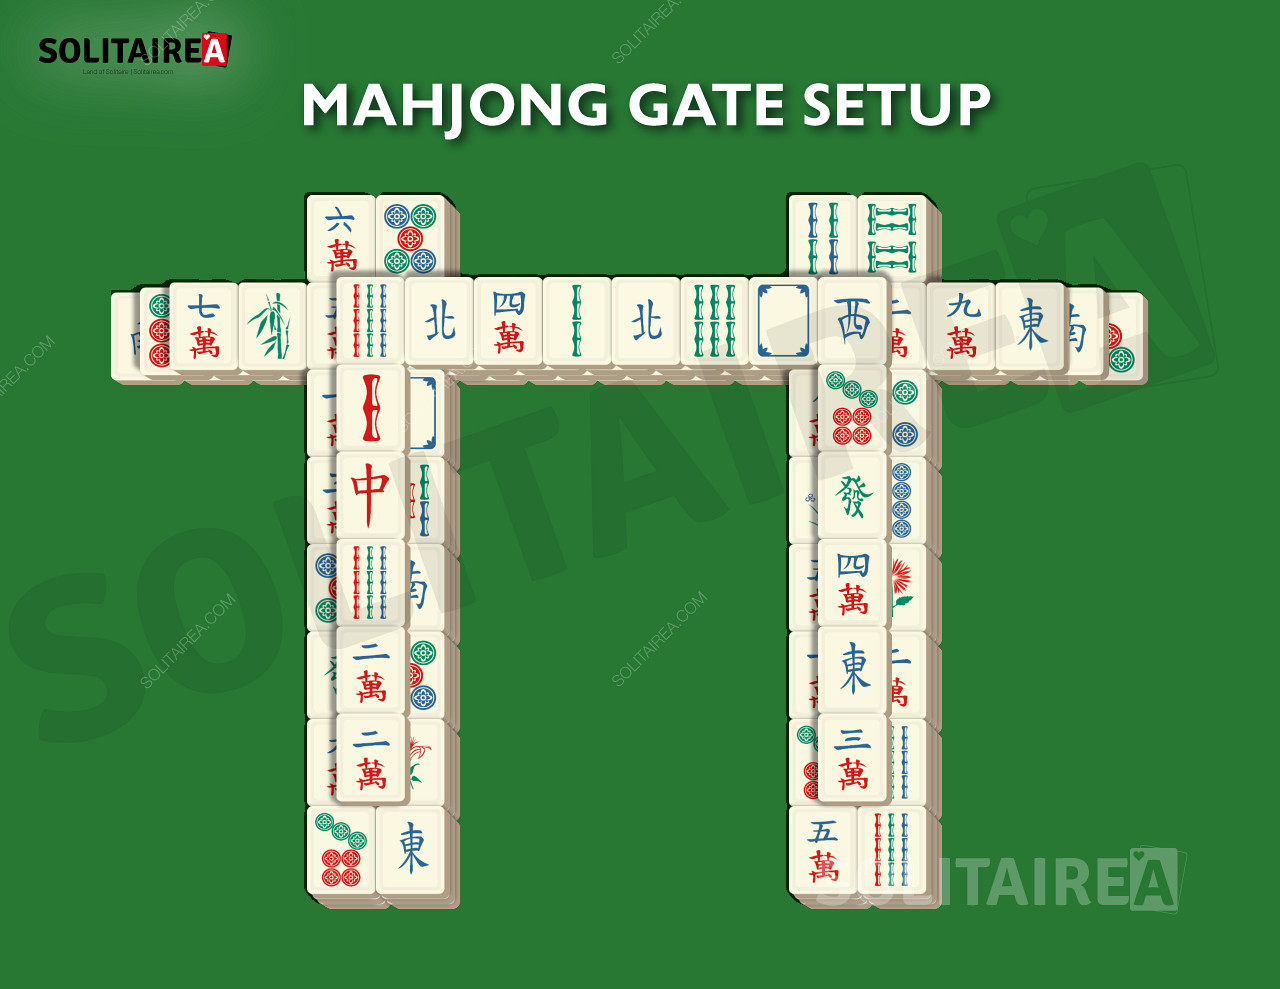 Configuração e estratégia do Mahjong Gate